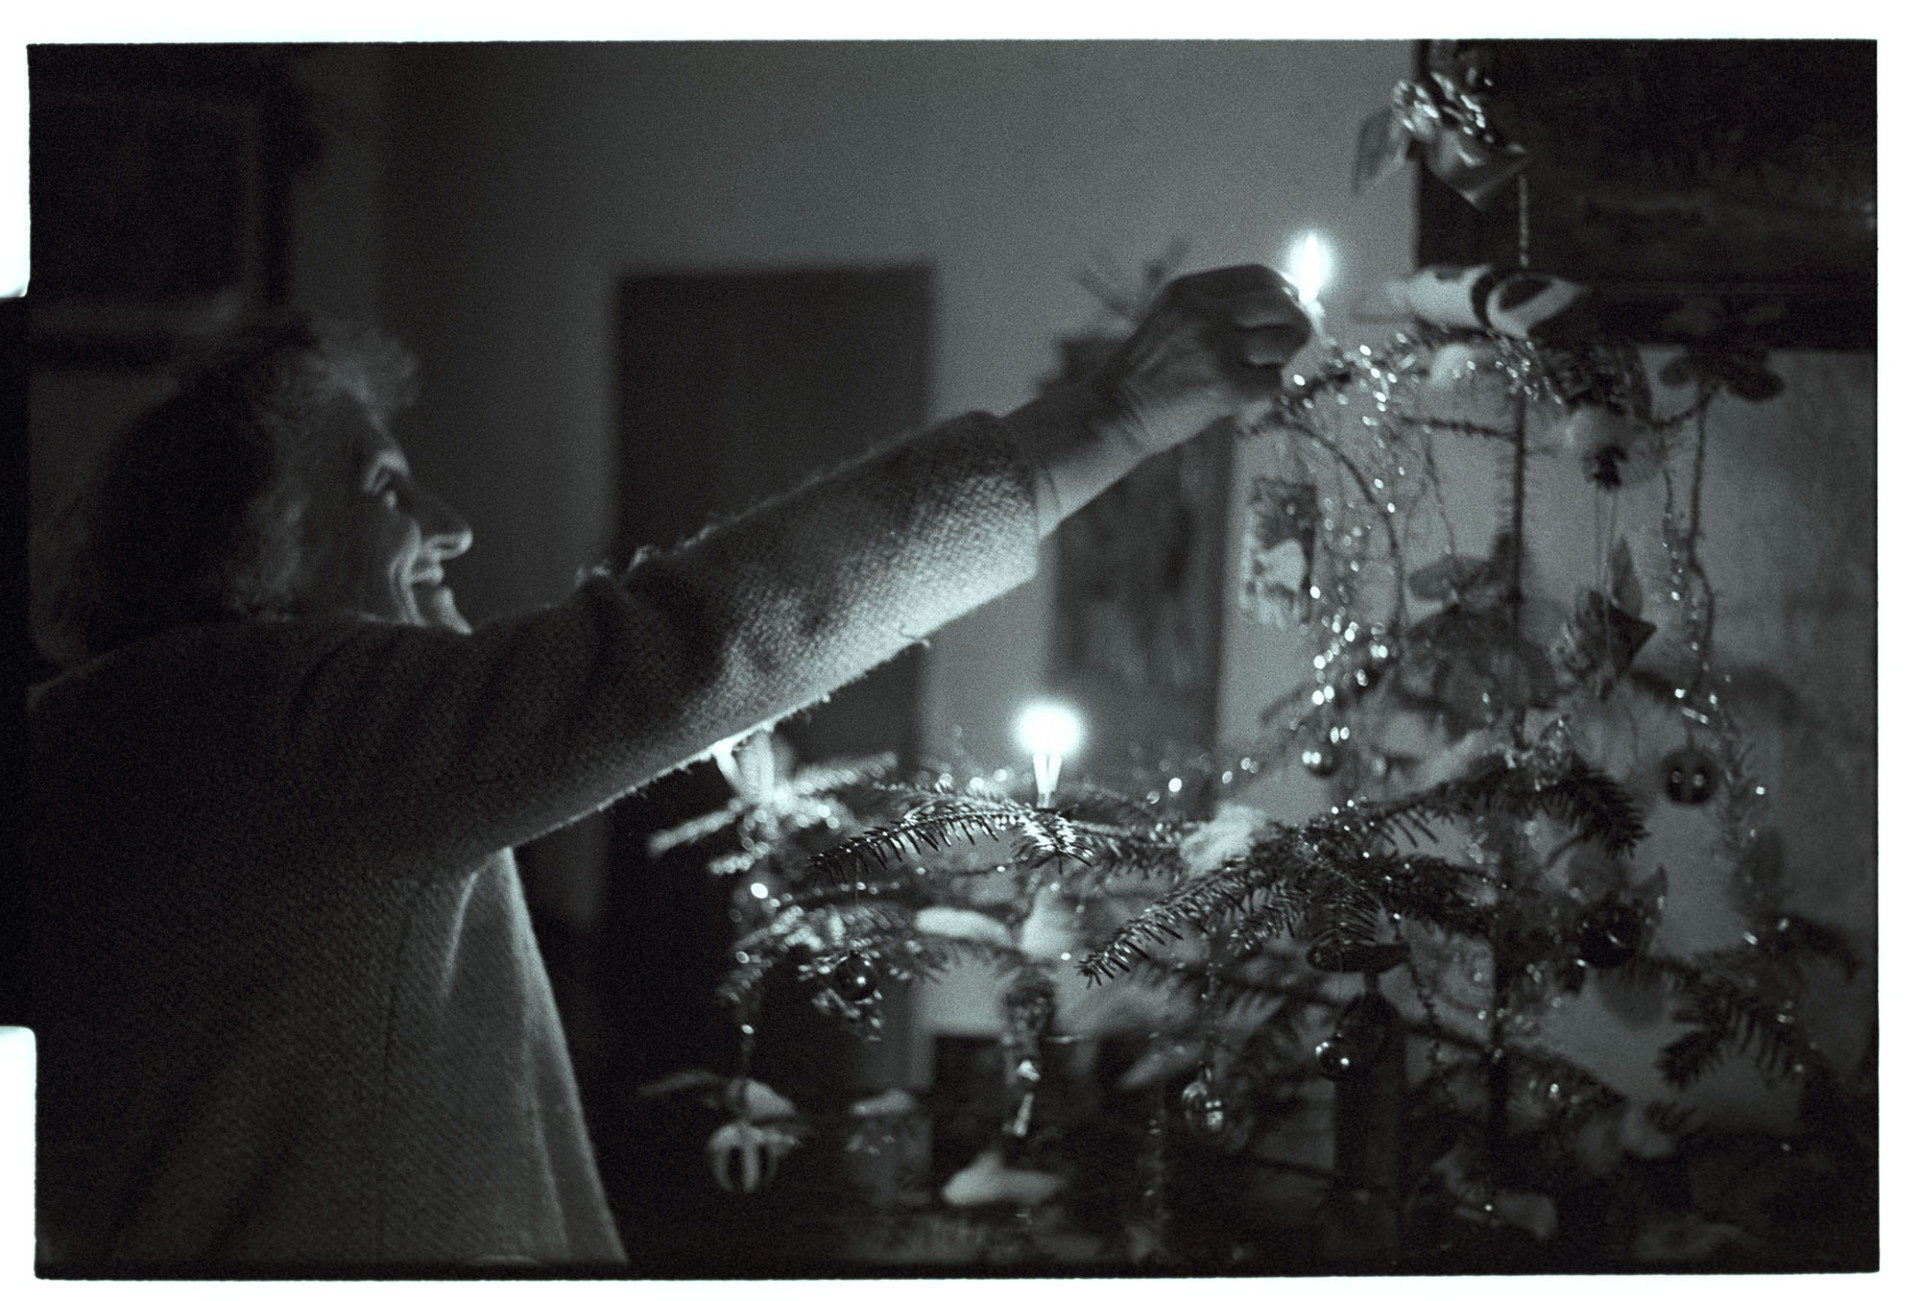 Woman lighting candles on Christmas Tree.
[Jean Pickard lighting candles on a Christmas tree at Woolridge, Dolton]